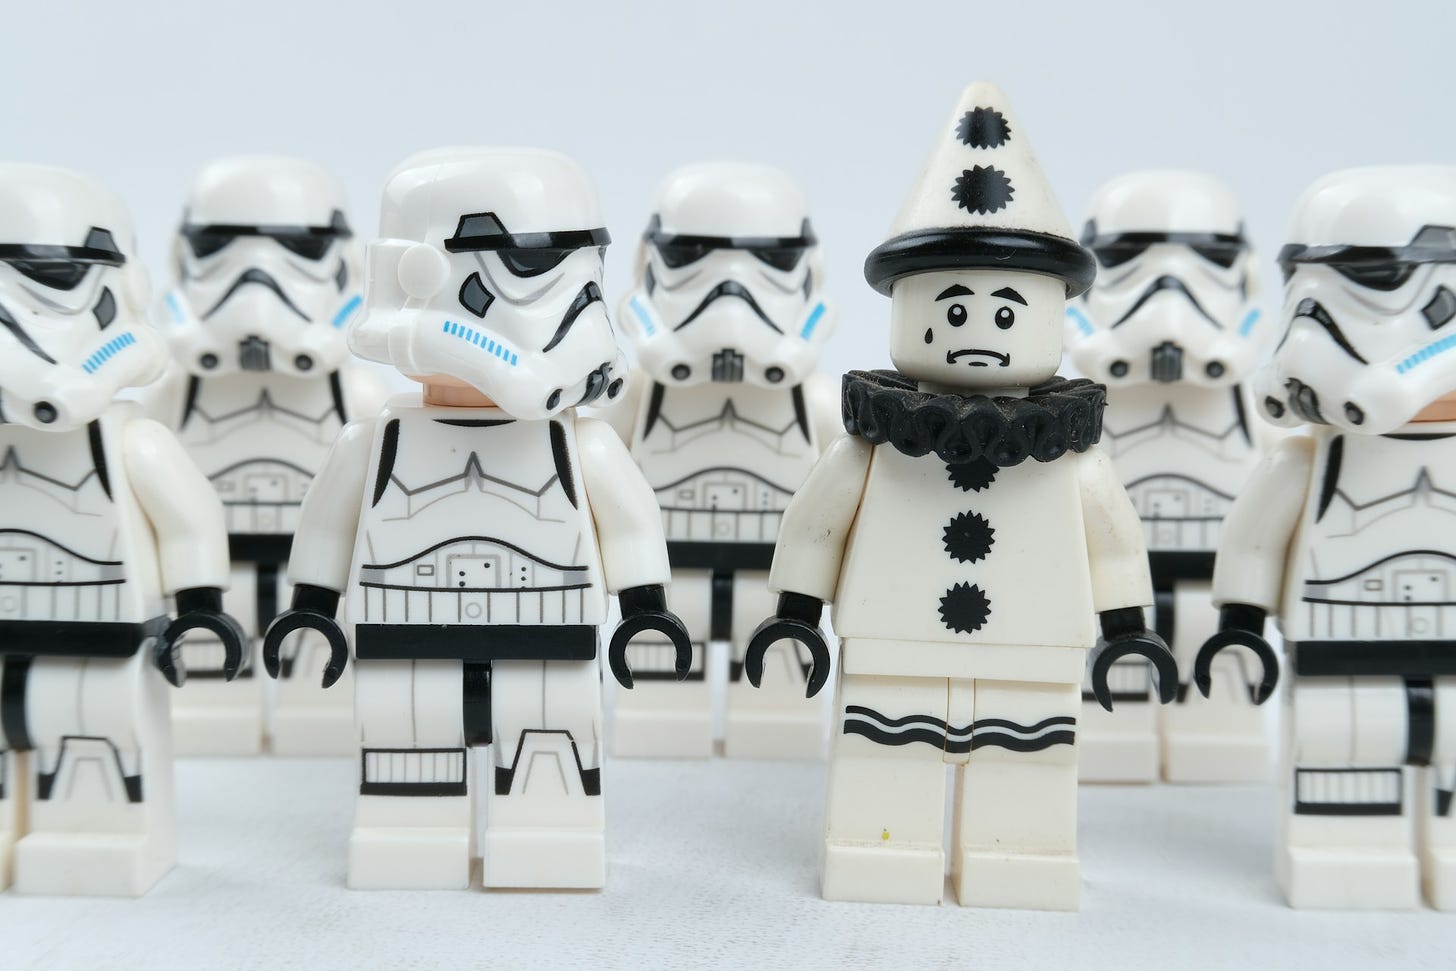 Gruppo di omini Lego vestiti da cloni di Satr Wars, con uno però che è vestito da Pierrot col sorriso all'ingiù e una lacrima sul viso.